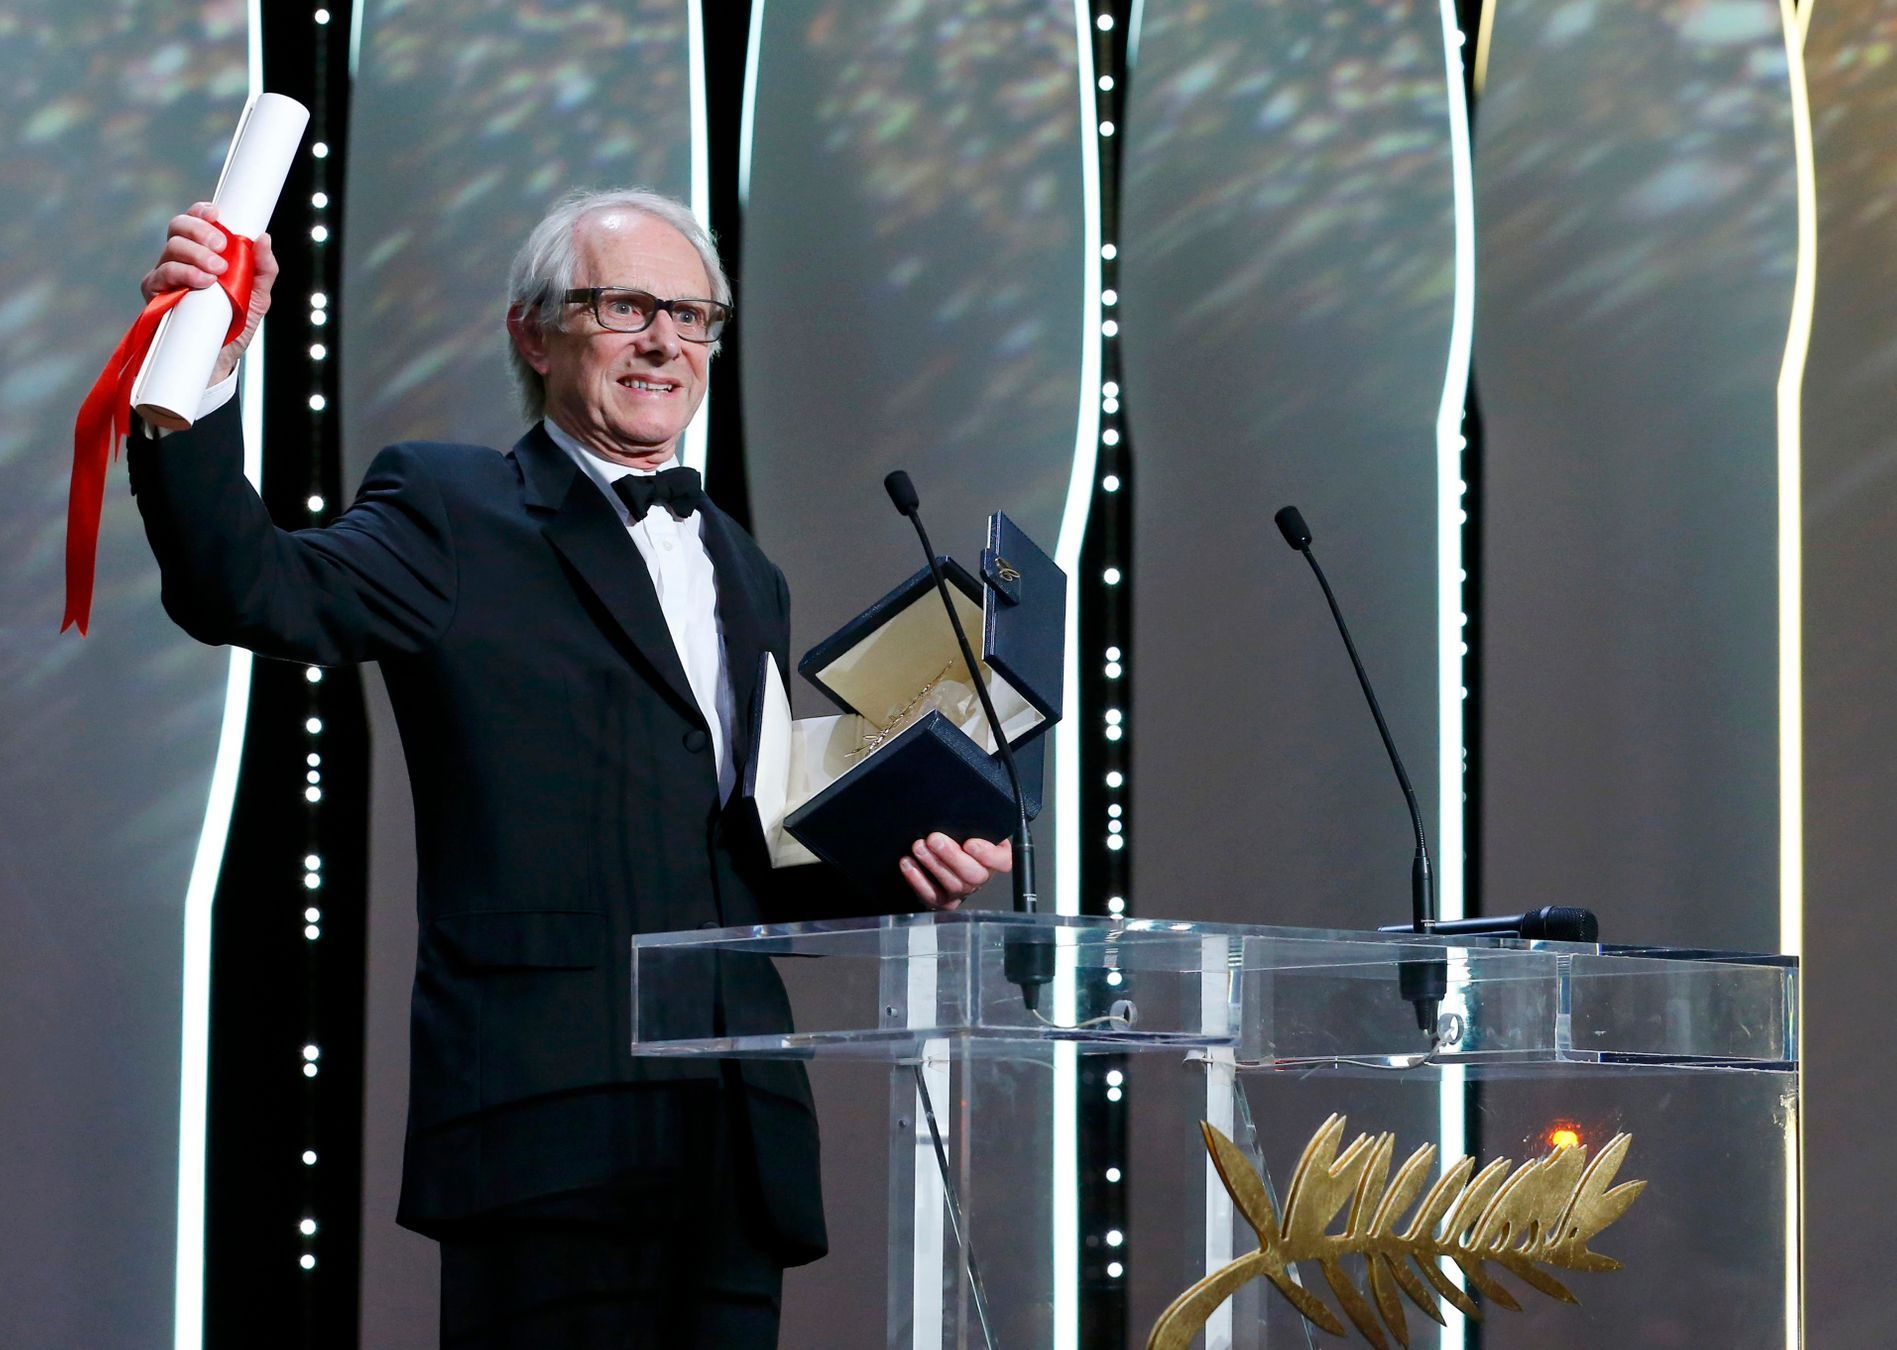 Režisér Ken Loach získal Zlatou palmu z Cannes